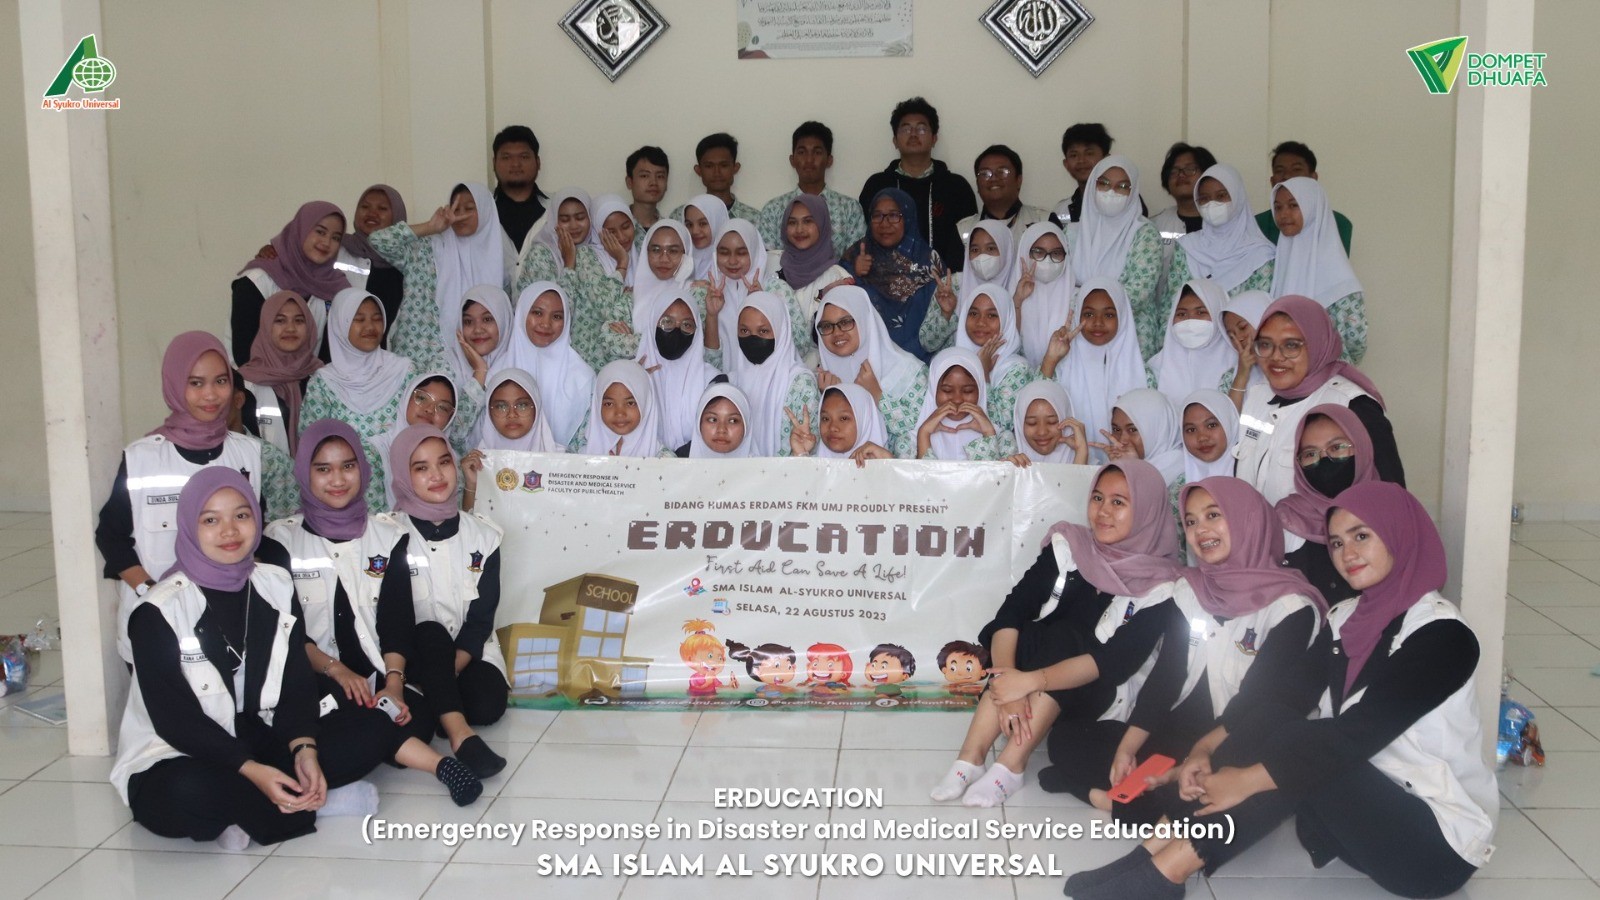 Pelatihan Pertolongan Pertama ERDUCATION dari Mahasiswa FKM UMJ di SMA Al-Syukro Universal